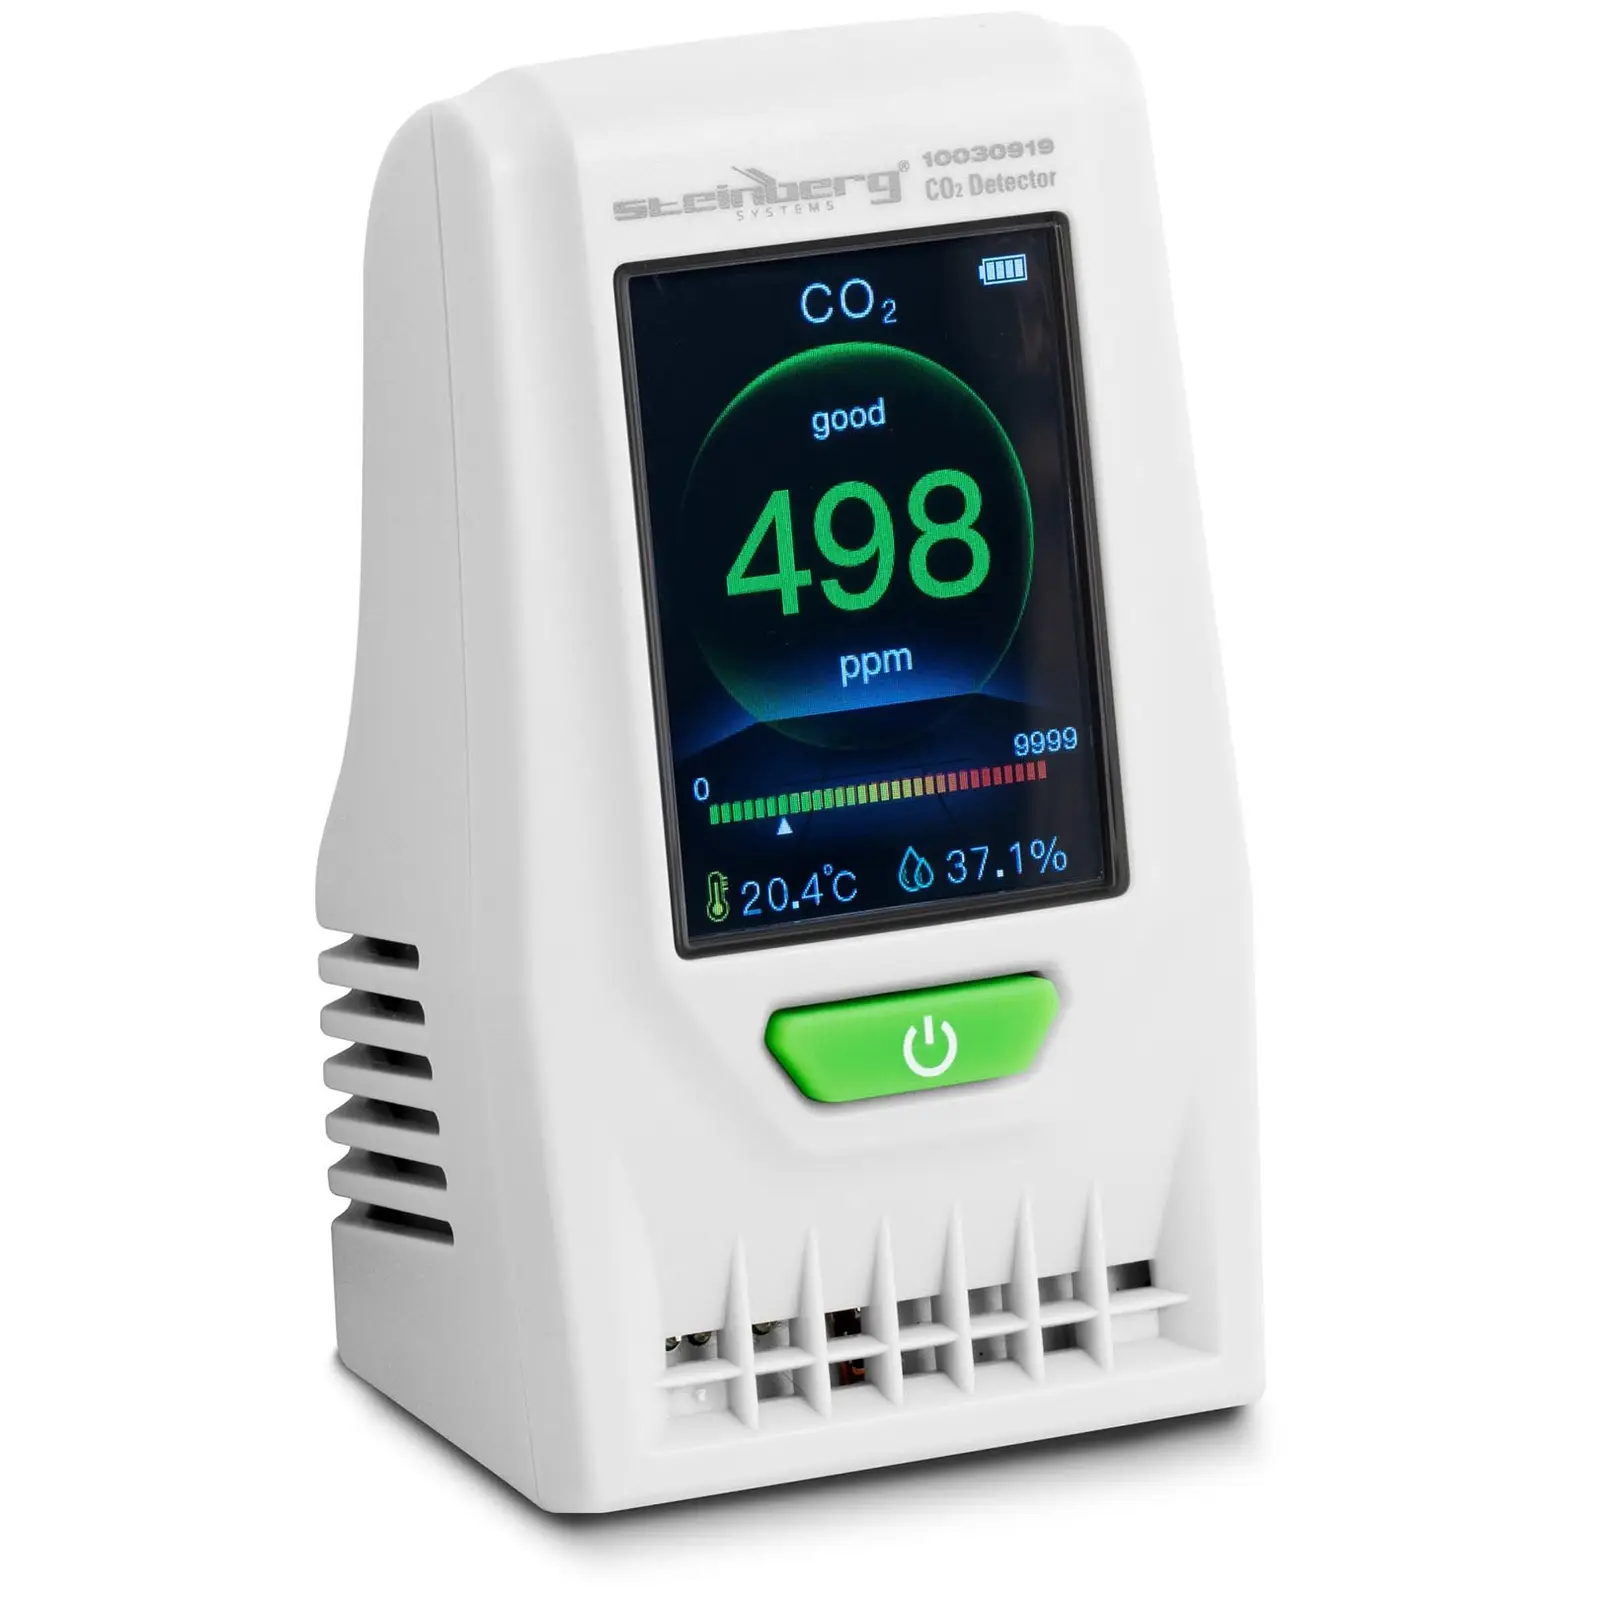 Koldioxidmätare – Inkl. temperatur, luftfuktighet, datum och tid